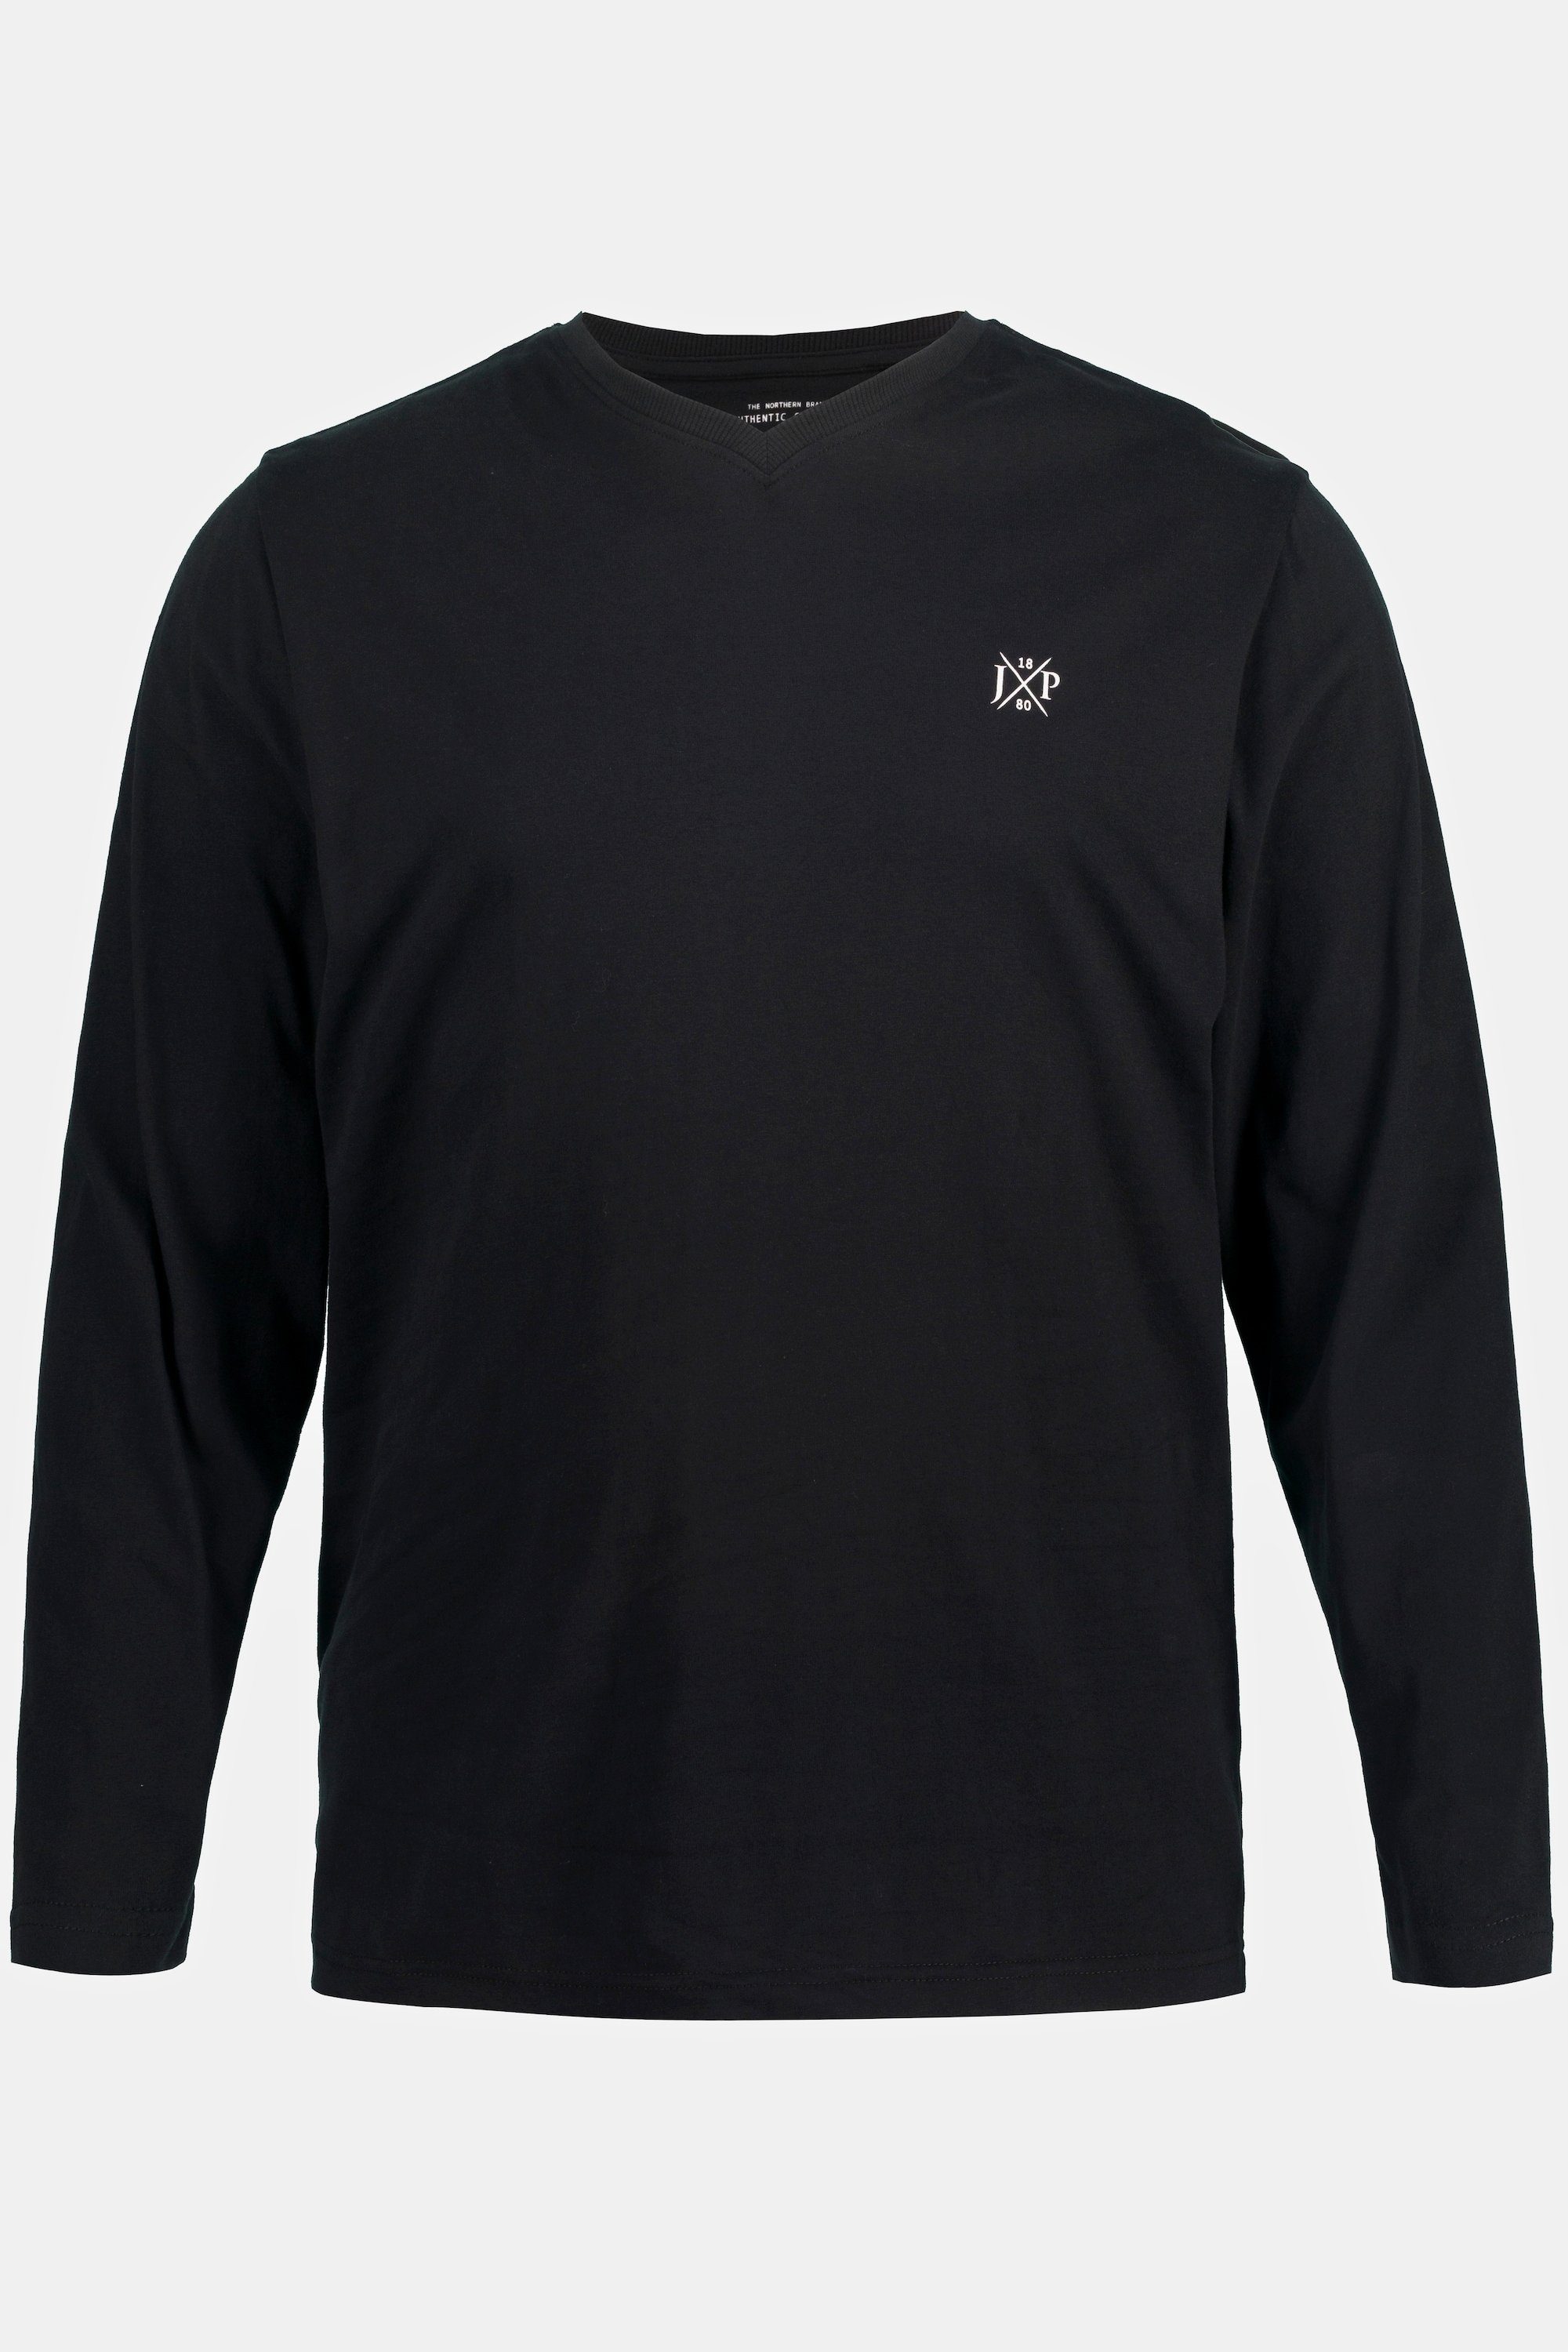 XL T-Shirt 8 Langarmshirt V-Ausschnitt schwarz Langarm Basic bis JP1880